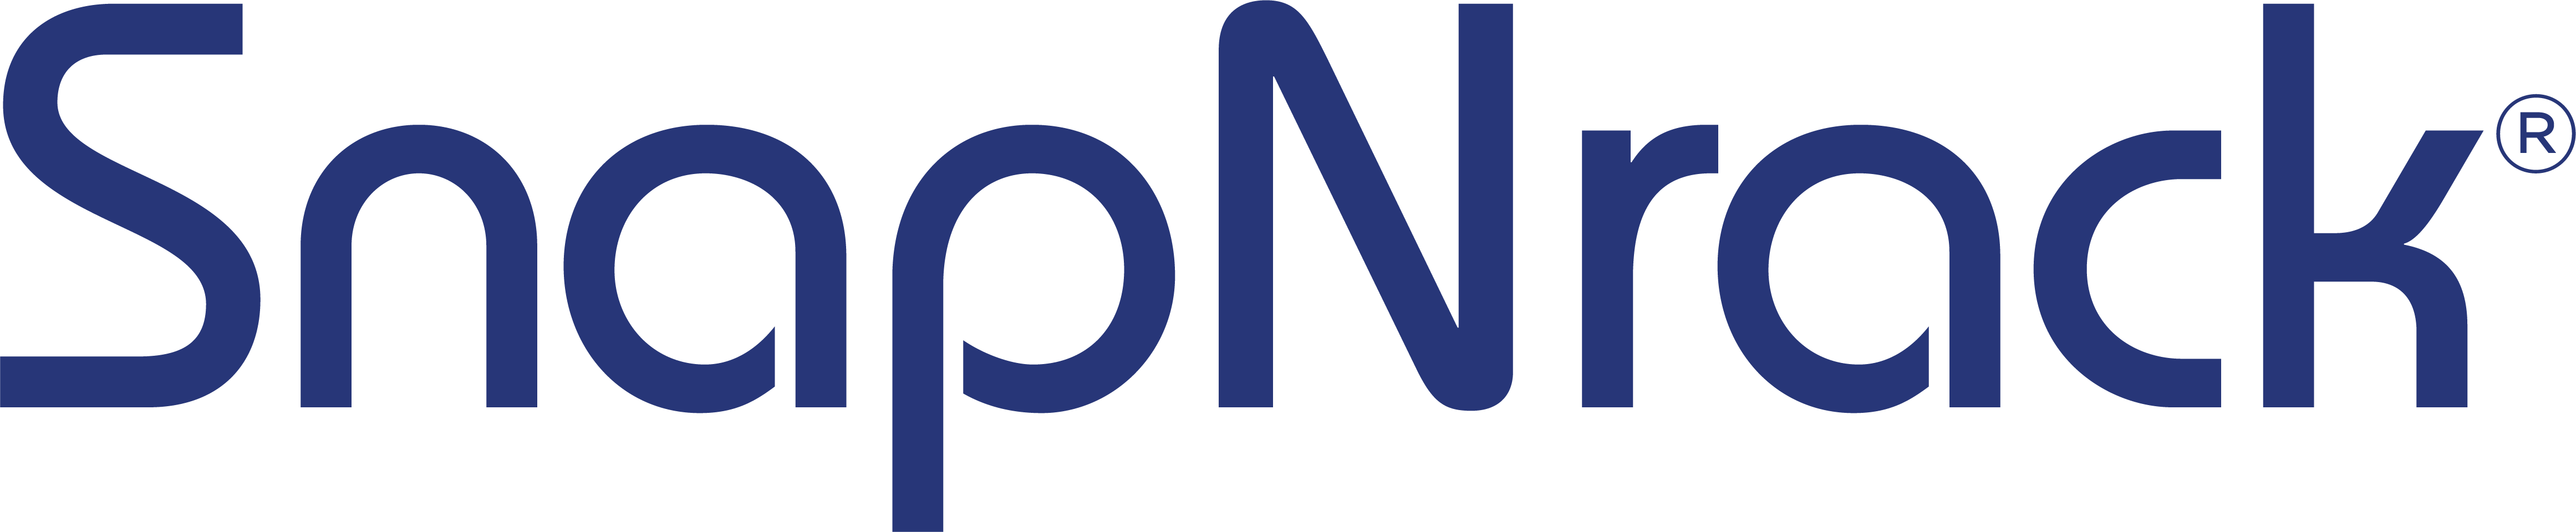 SnapNrack - Logo _kW